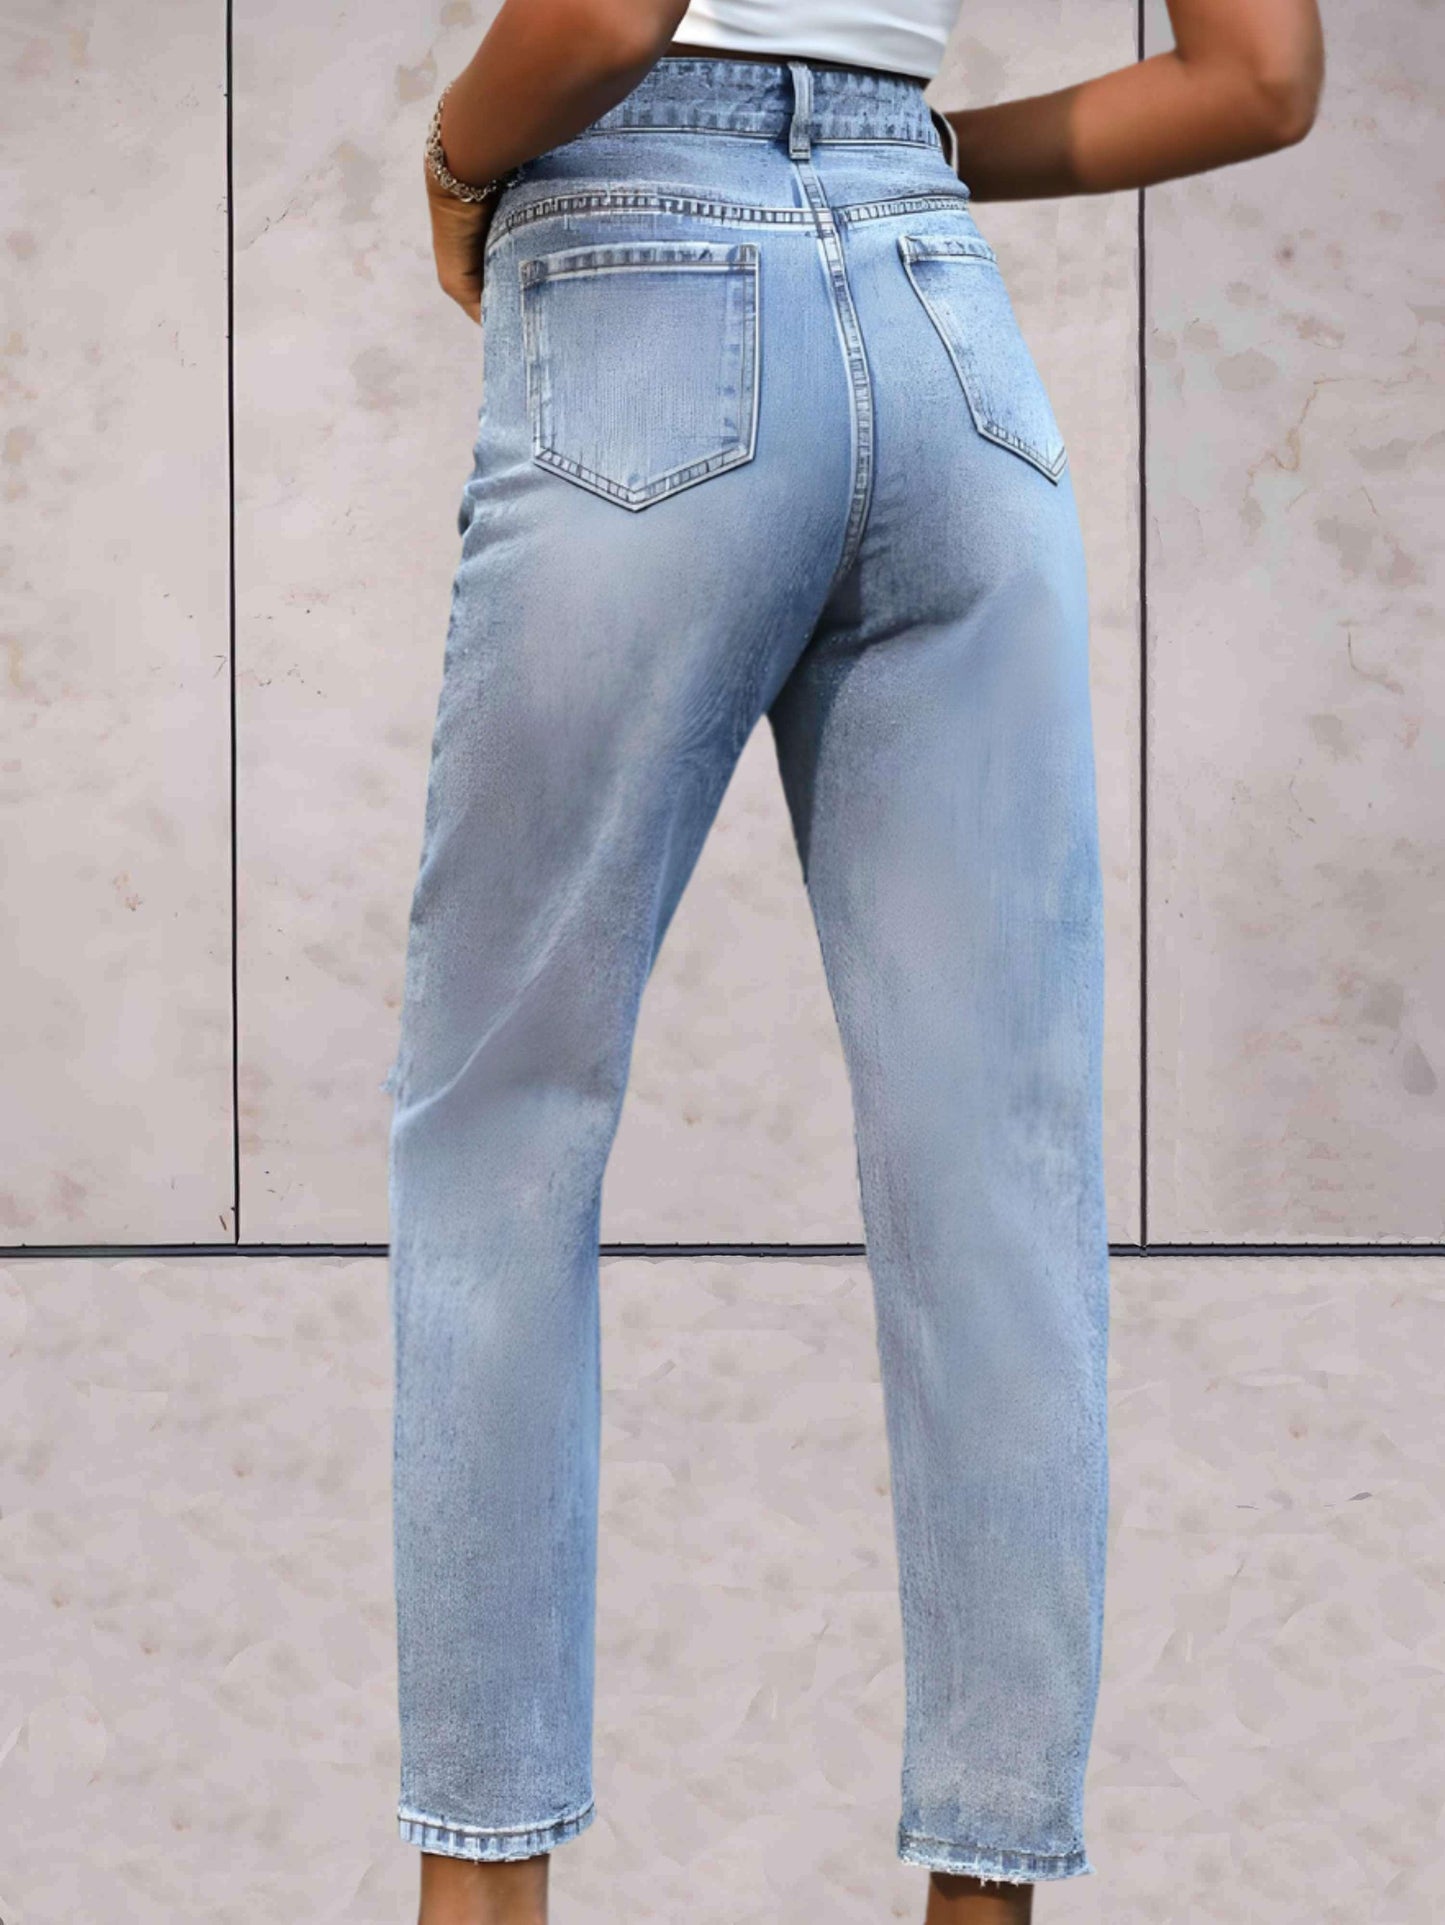 Jada - Enkellange gescheurde jeans met semi-vervaagd dessin - Sky-Sense